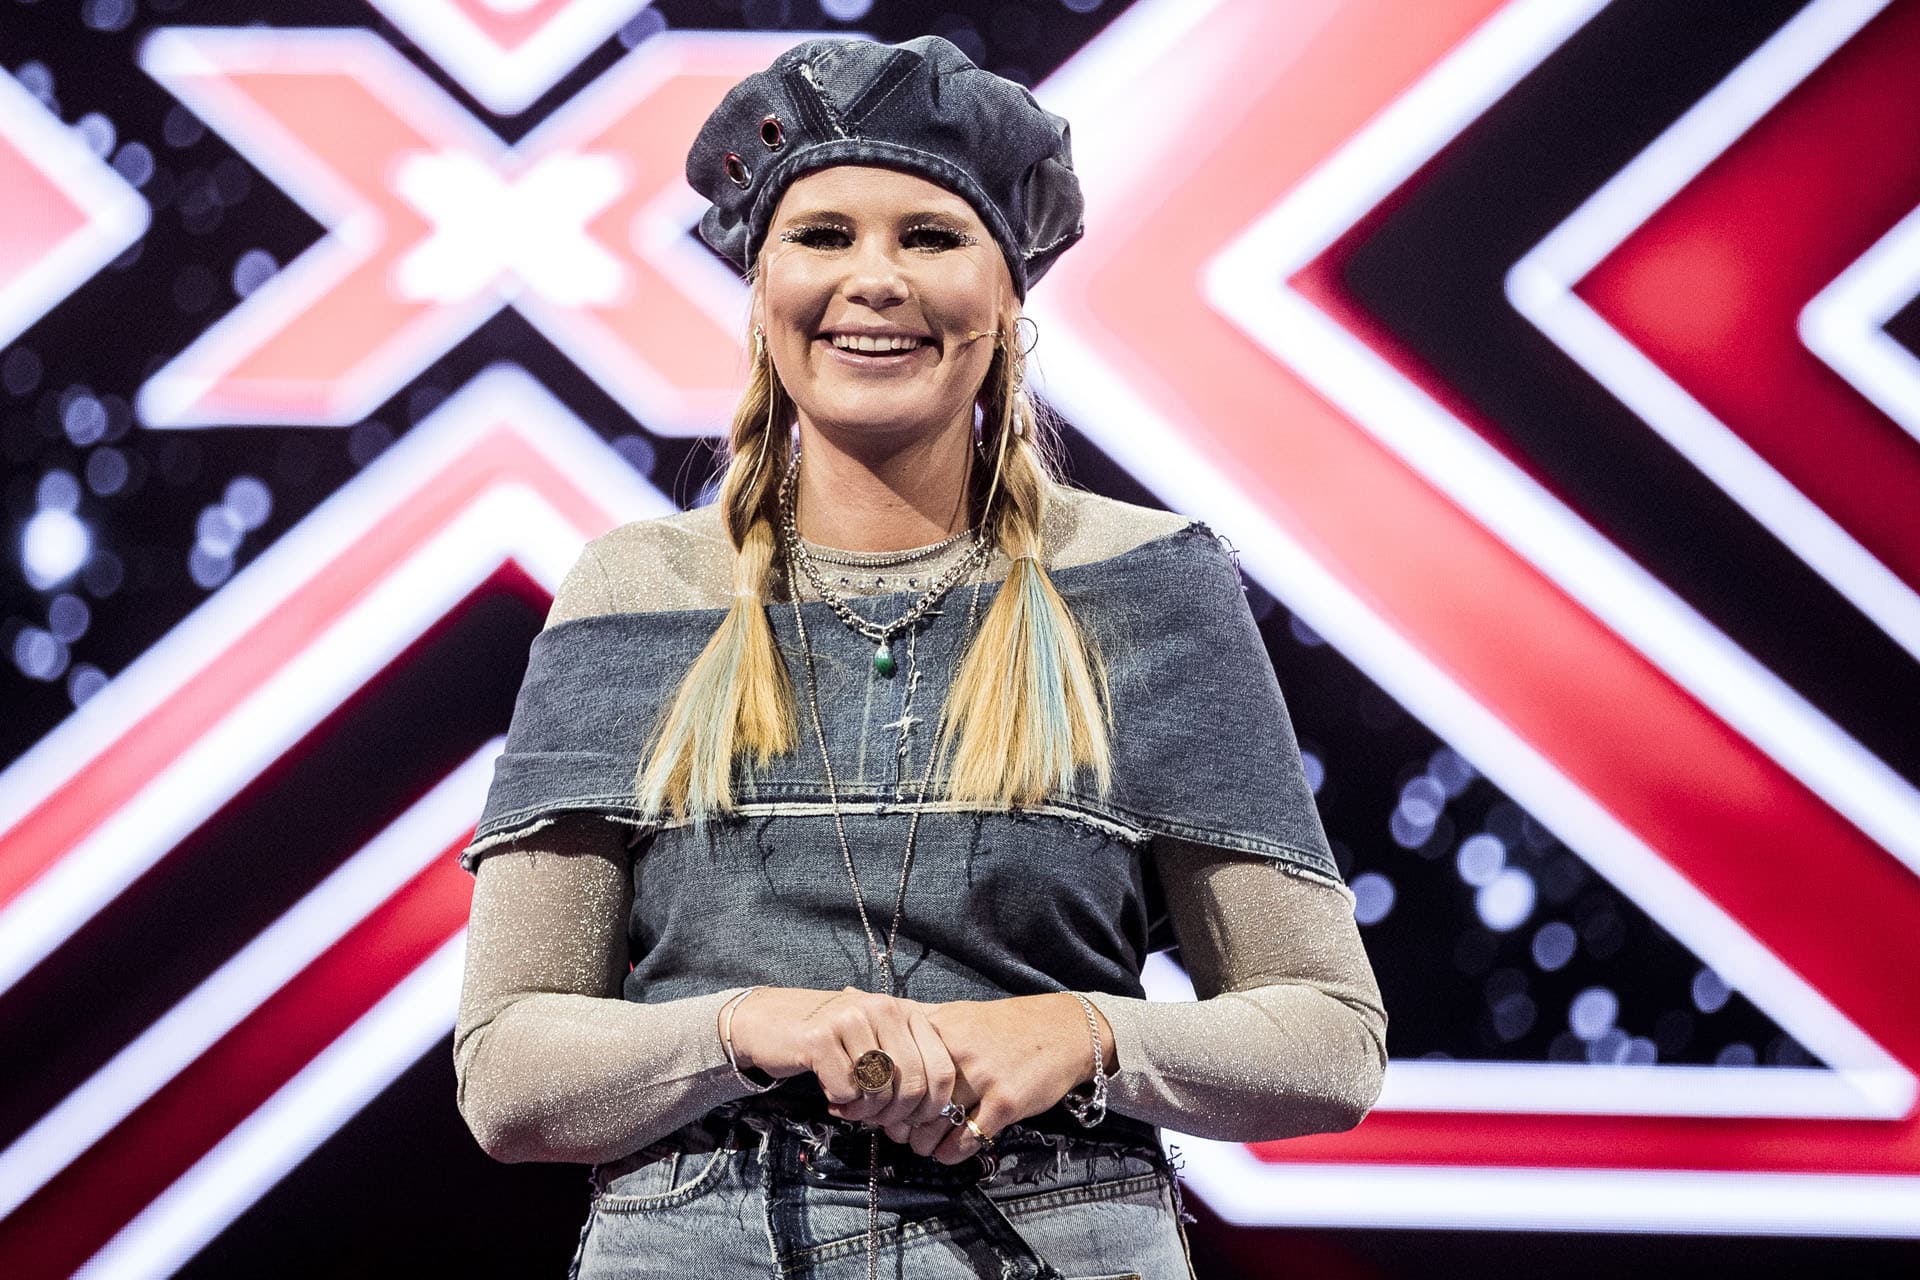 Kolding-designer står Sofie Lindes X Factor outfit - Kolding Netavis